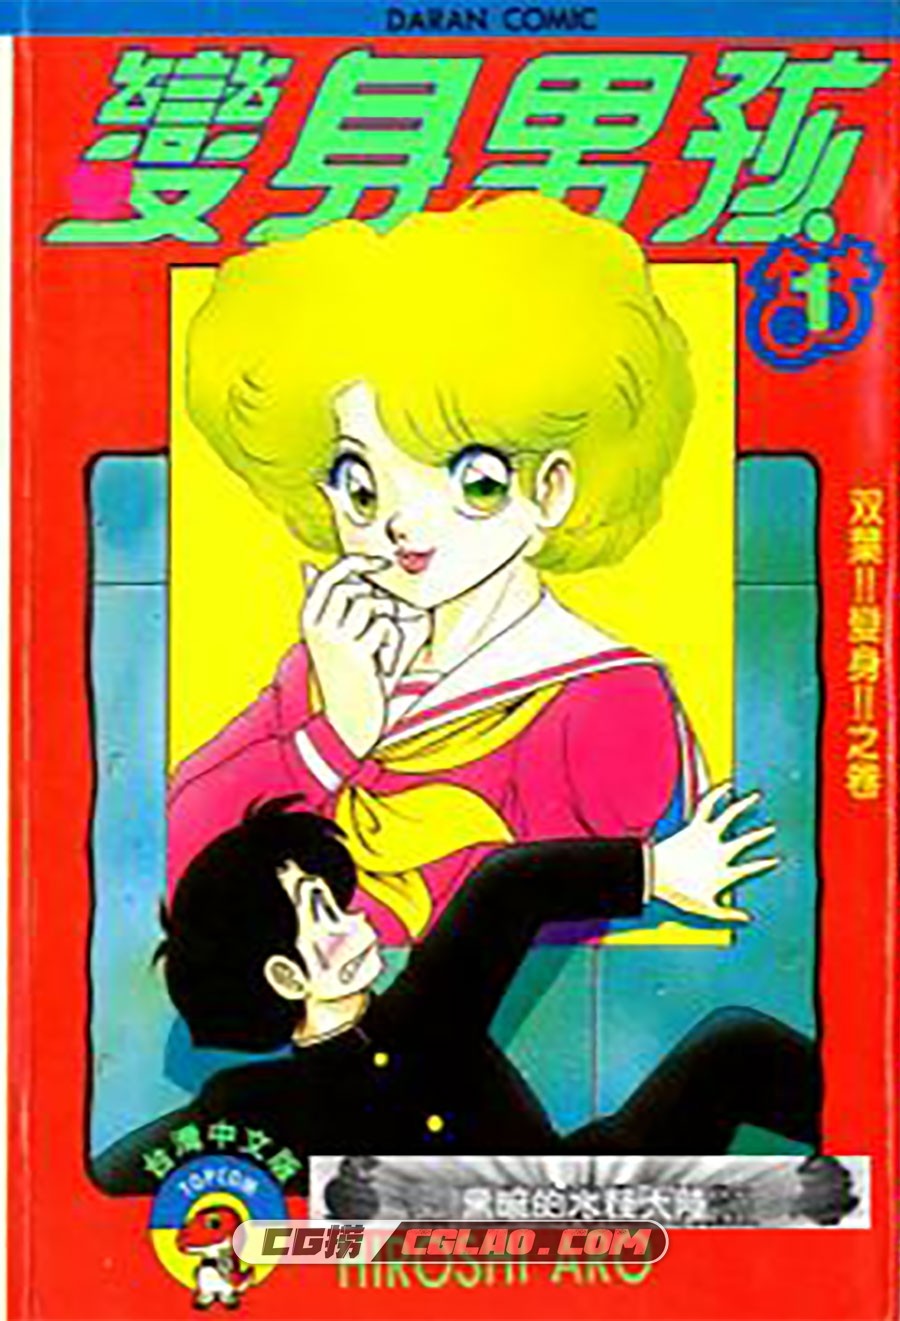 变身男孩 HiroshiAro 1-8卷 漫画全集完结下载 百度网盘下载,01-001.jpg